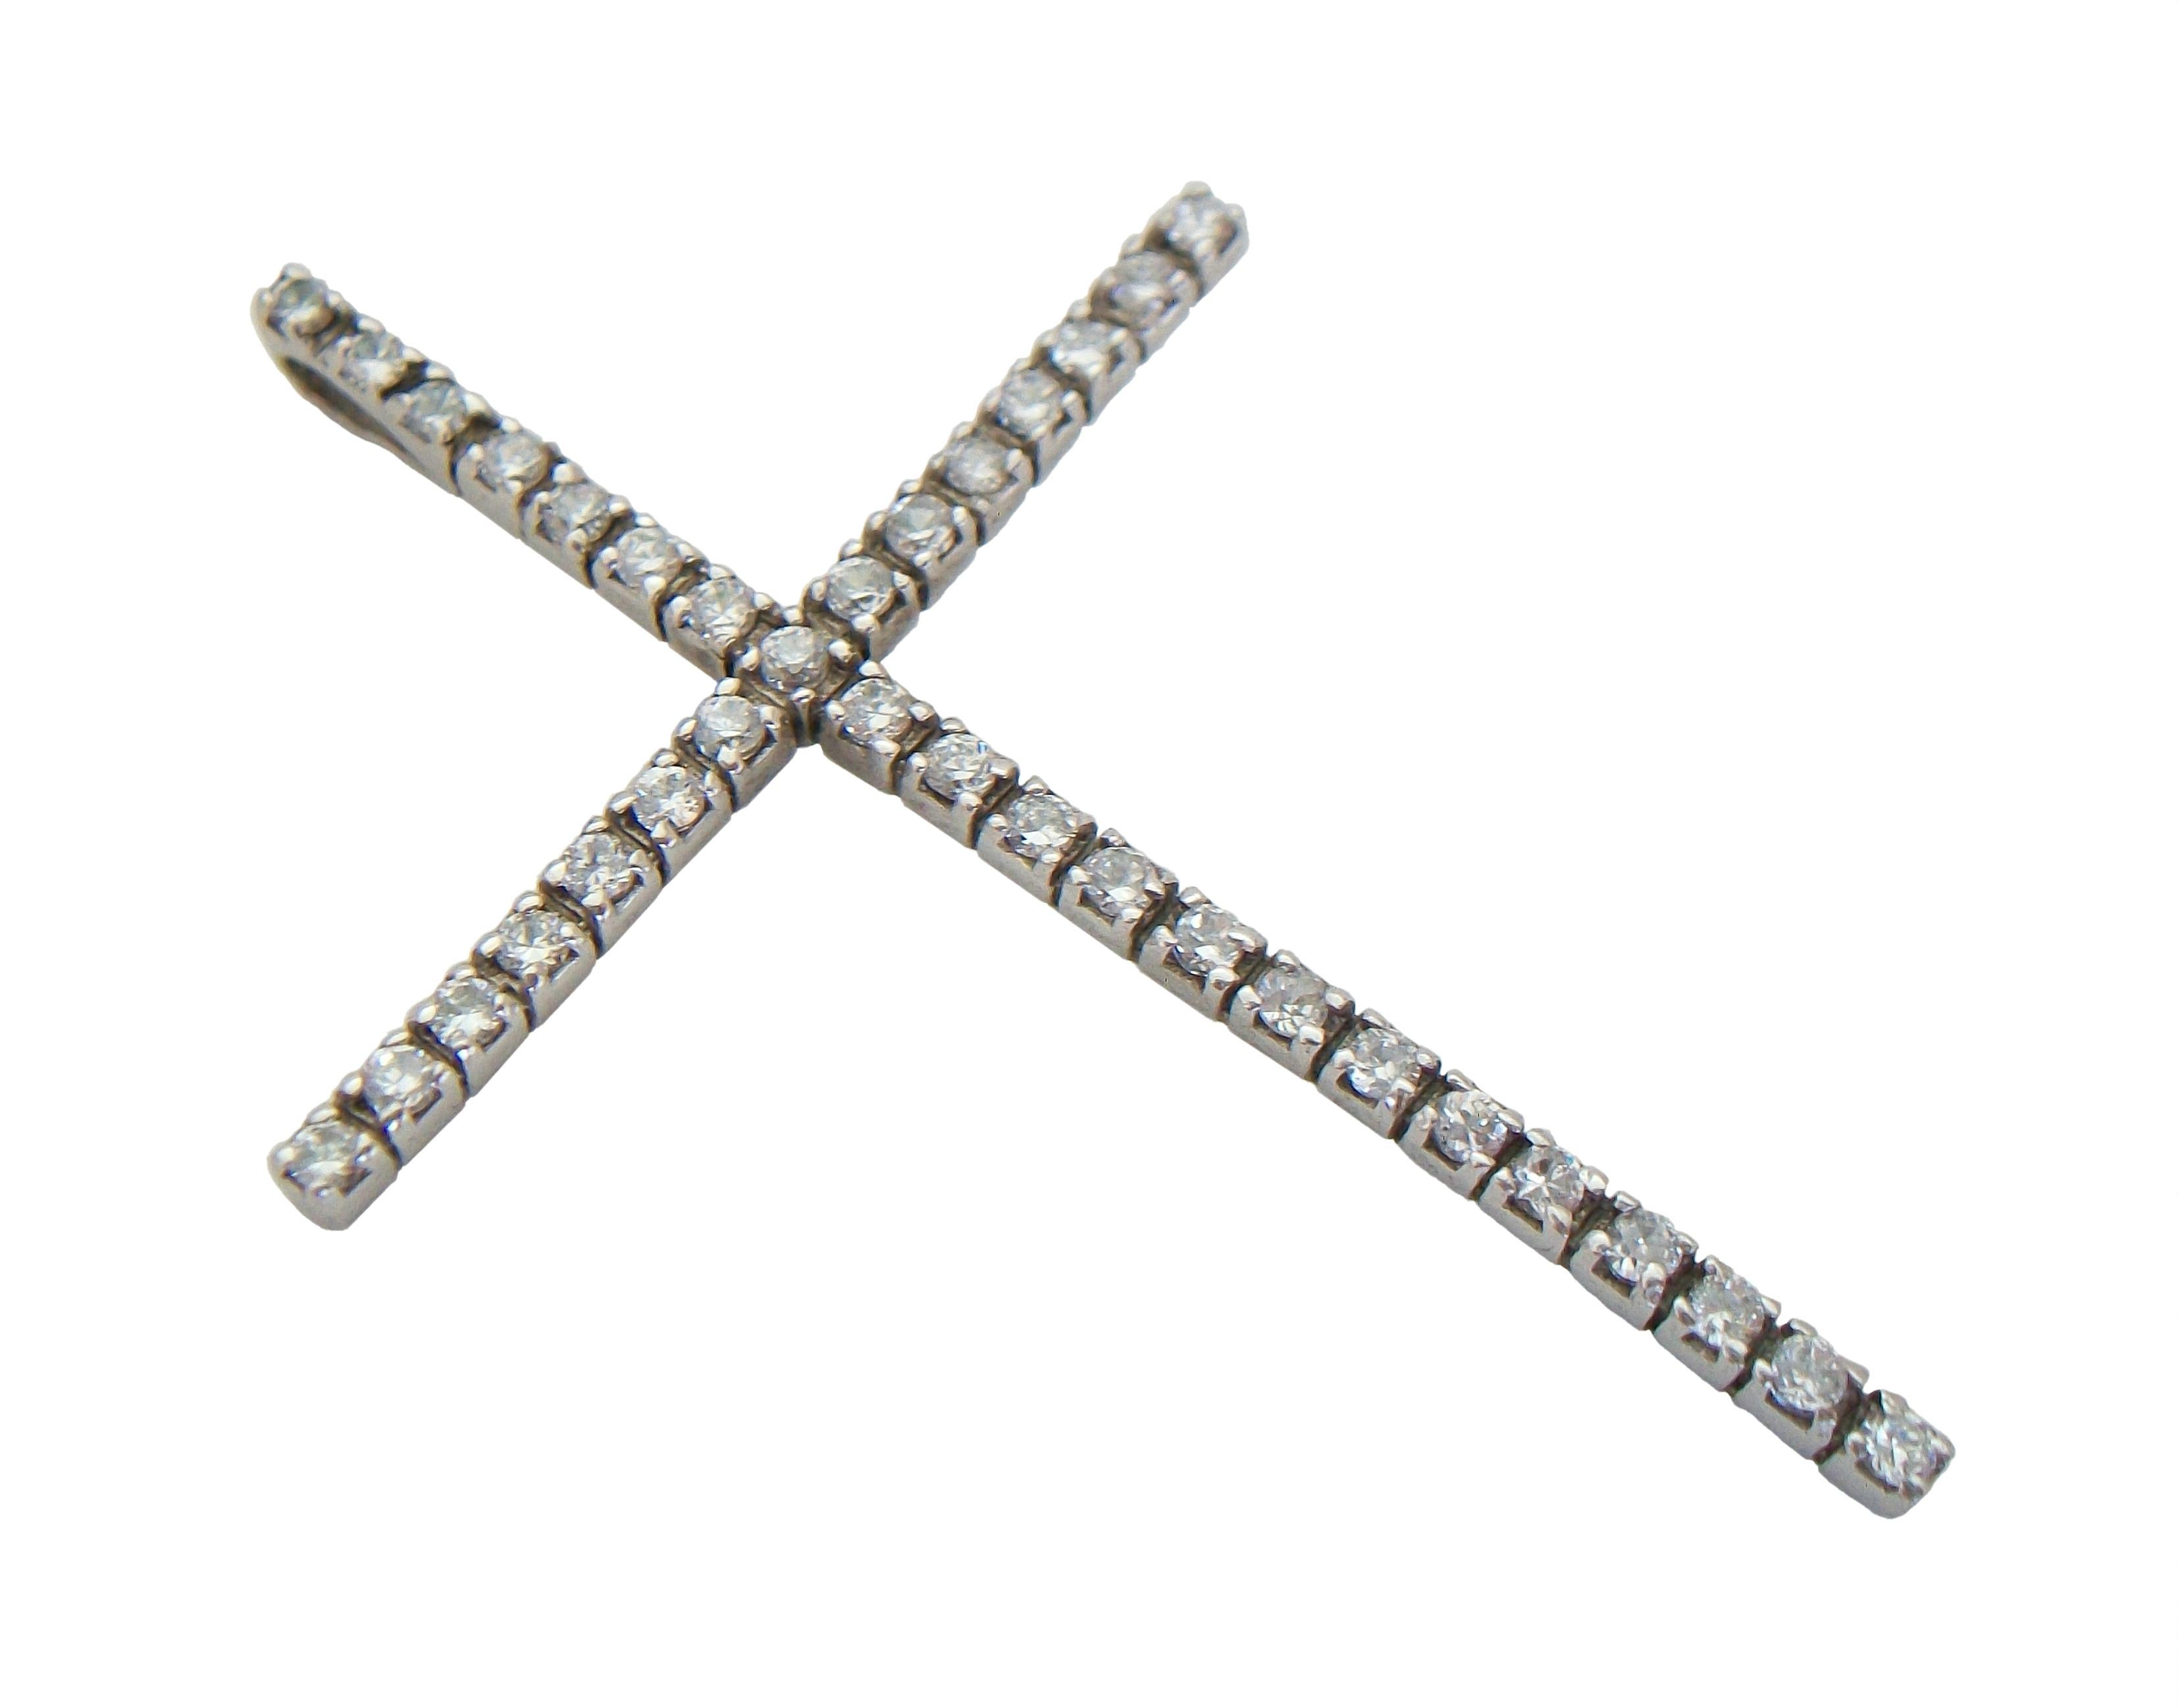 Pendentif vintage en forme de croix en argent sterling - grande taille - serti de 35 cristaux (ronds à facettes - sertis à griffes - chacun d'entre eux mesurant environ 2 mm de diamètre) - balle sertie à l'arrière de la croix - estampillé d'un